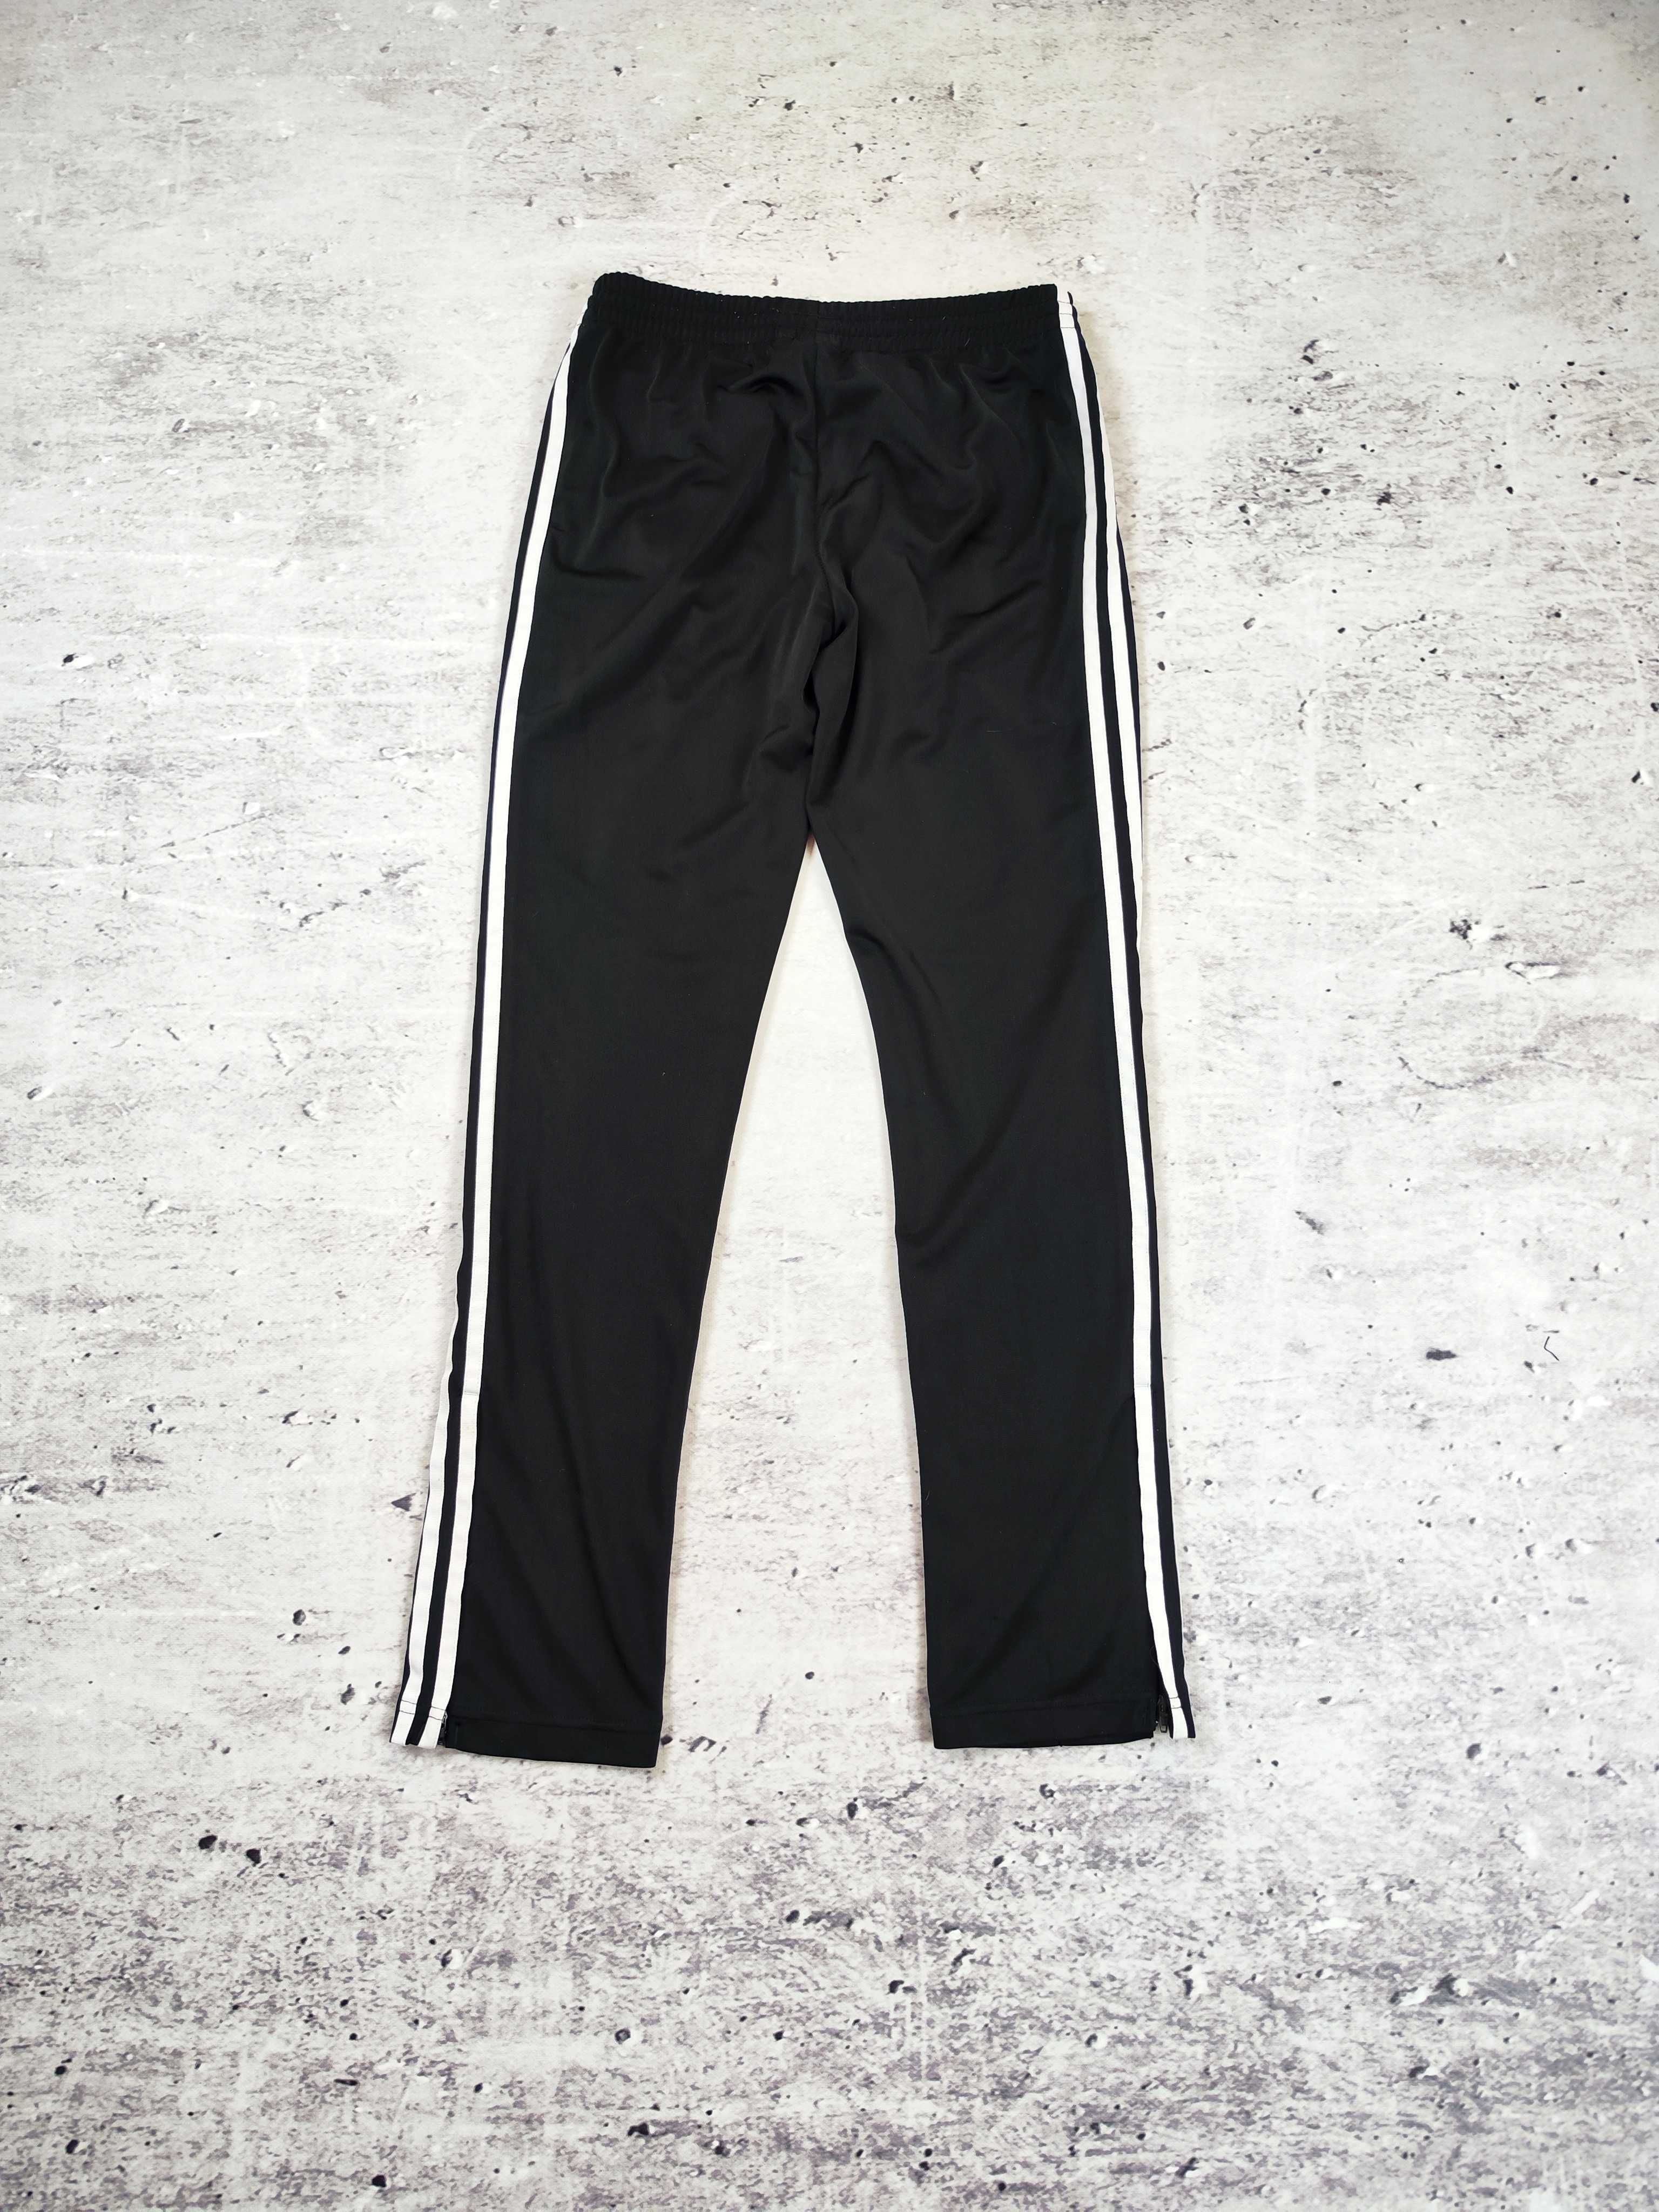 Spodnie dresowe Adidas sportowe dresy czarne tiro paski r. S